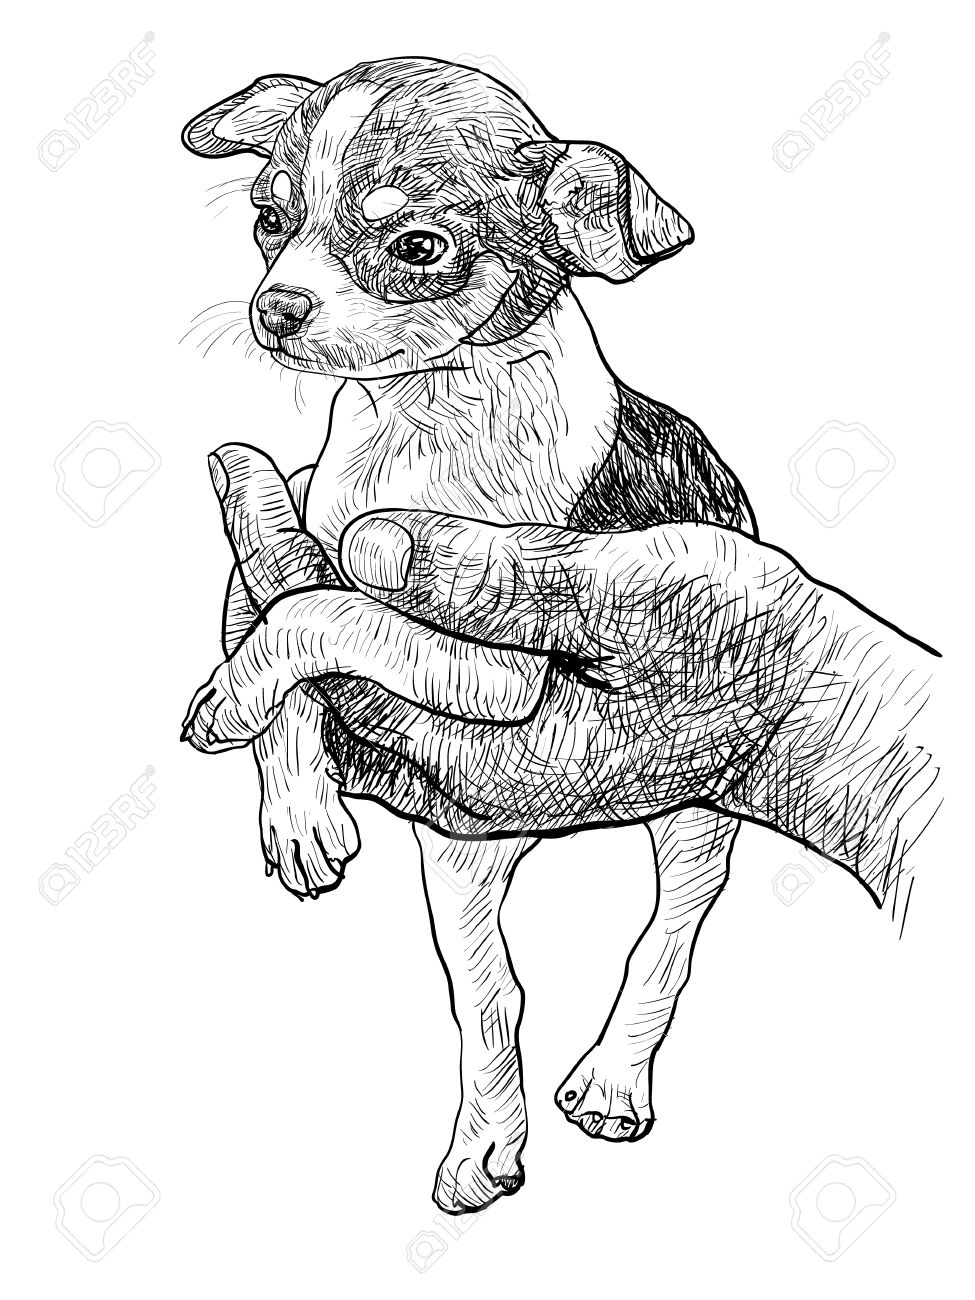 Chihuahua Dog Drawing at GetDrawings | Free download